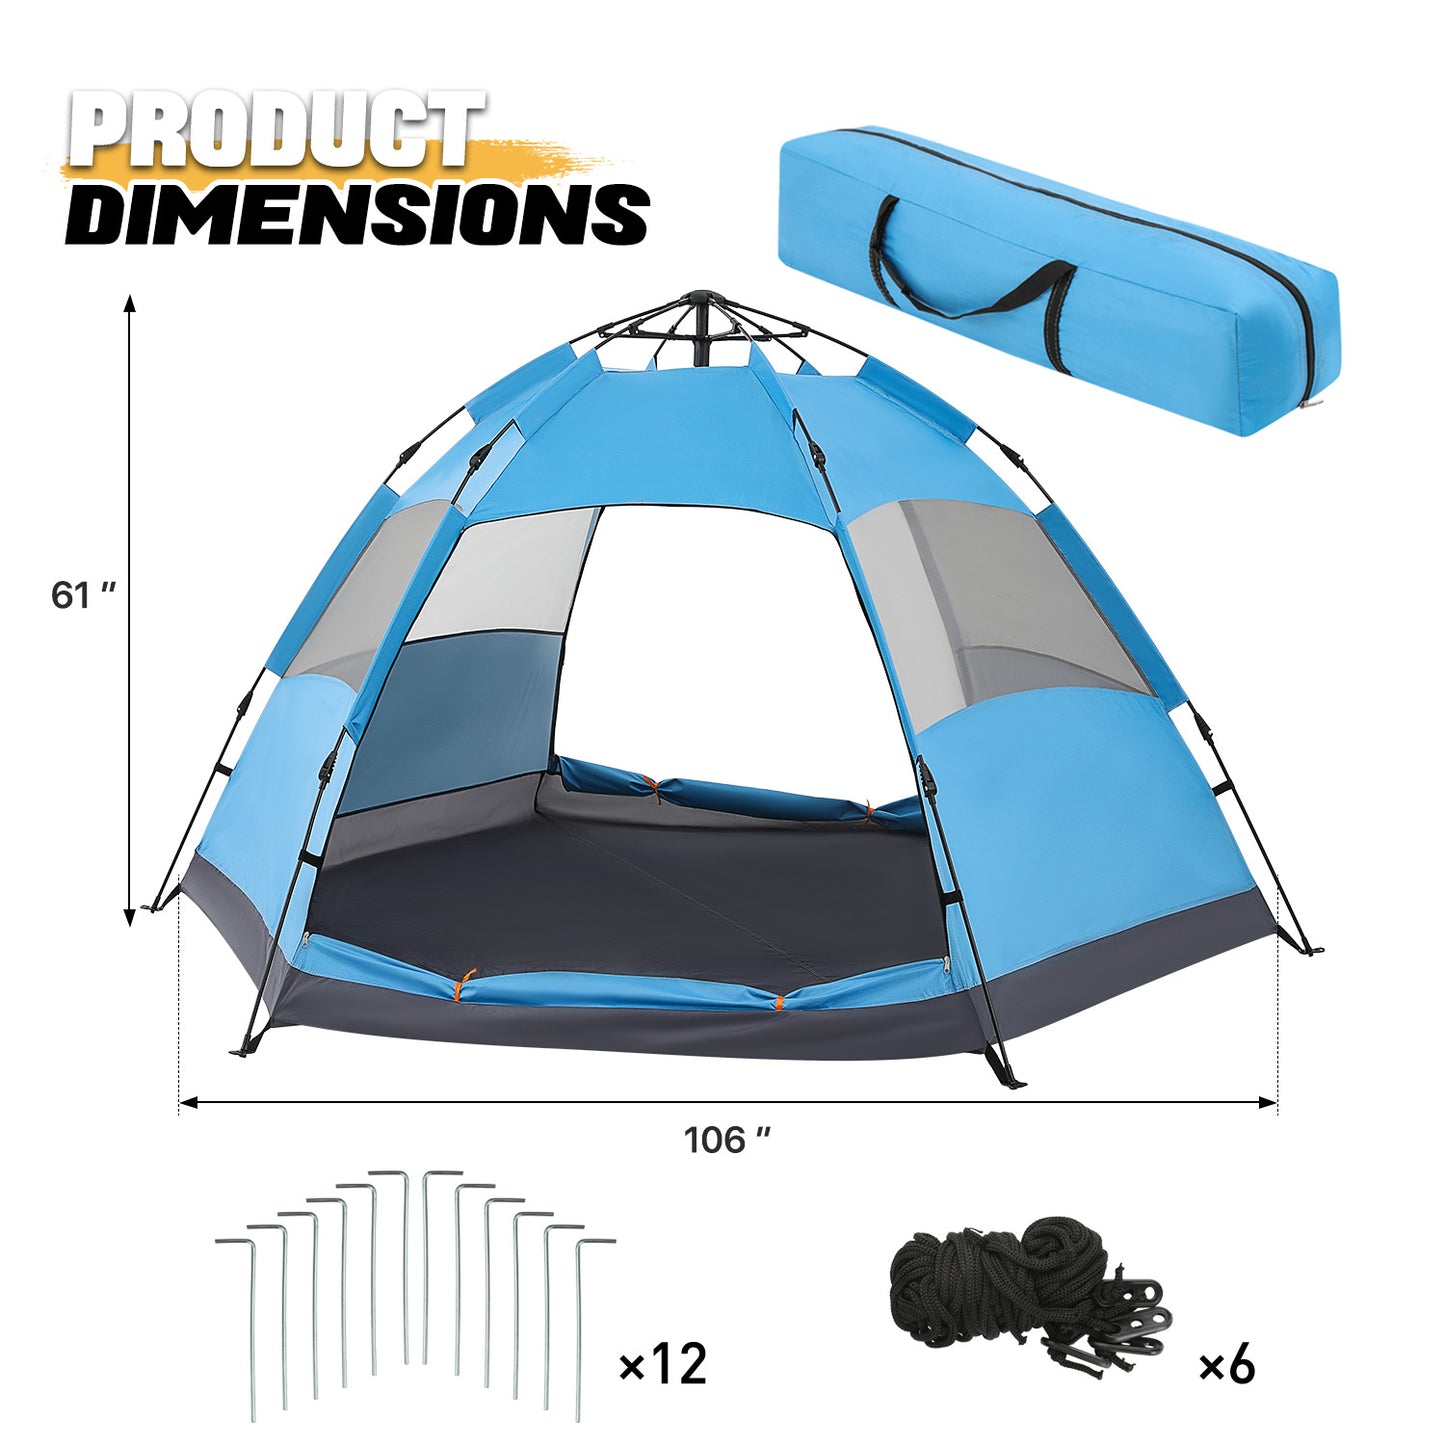 Dome Tent, 4 Person